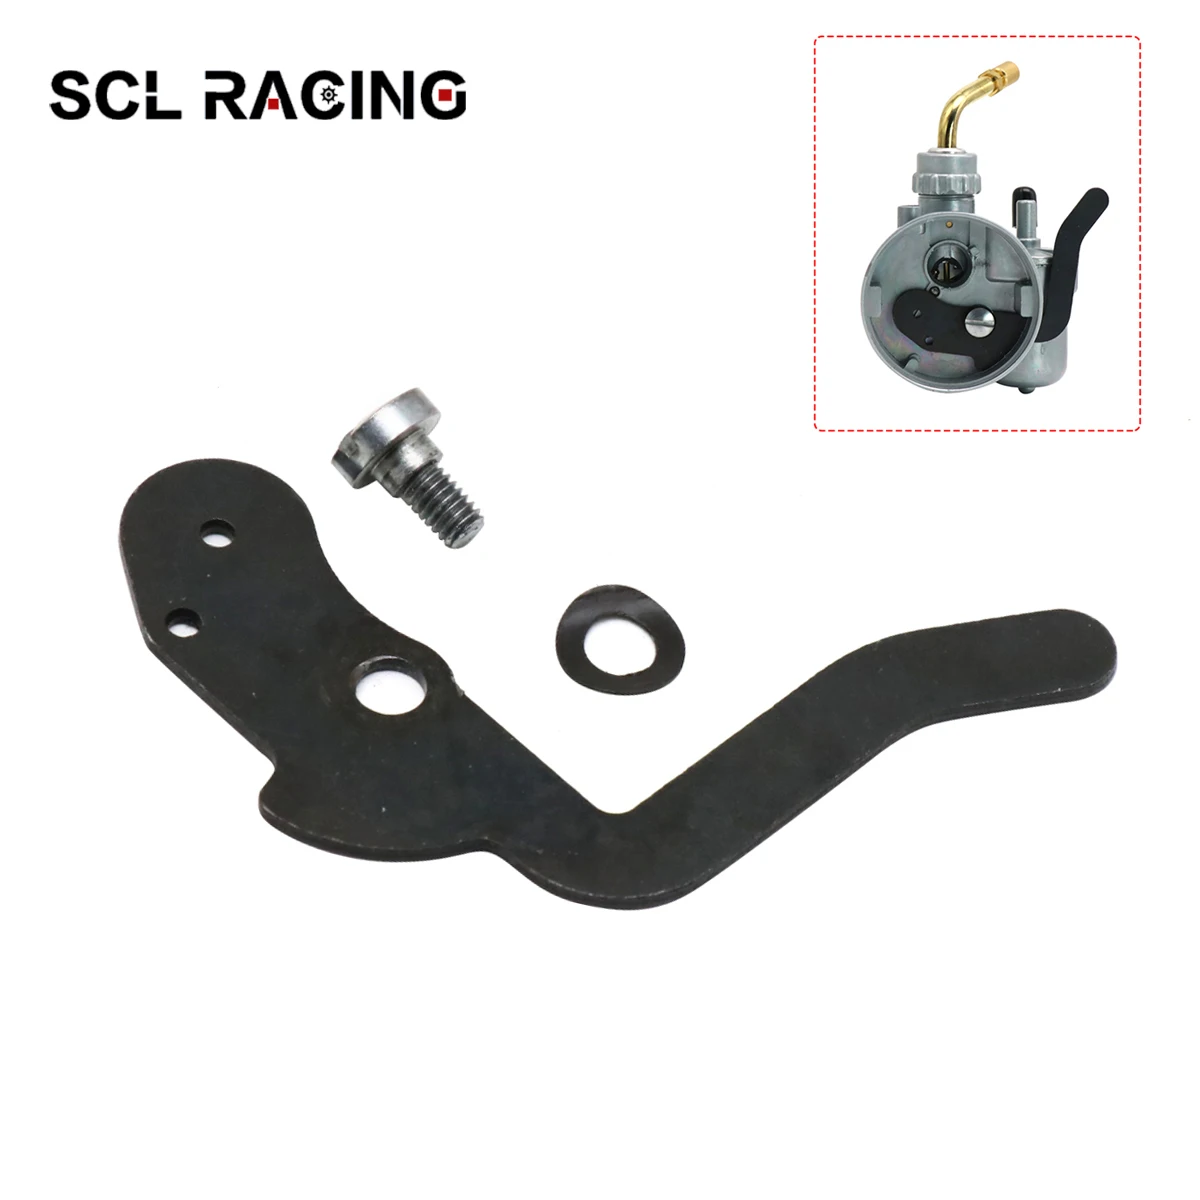 

Карбюратор SCL Racing BING SSE 1/12/225, ручной демпфер, стартовый клапан, ручной стартер карбюратора, стартовый клапан, набор